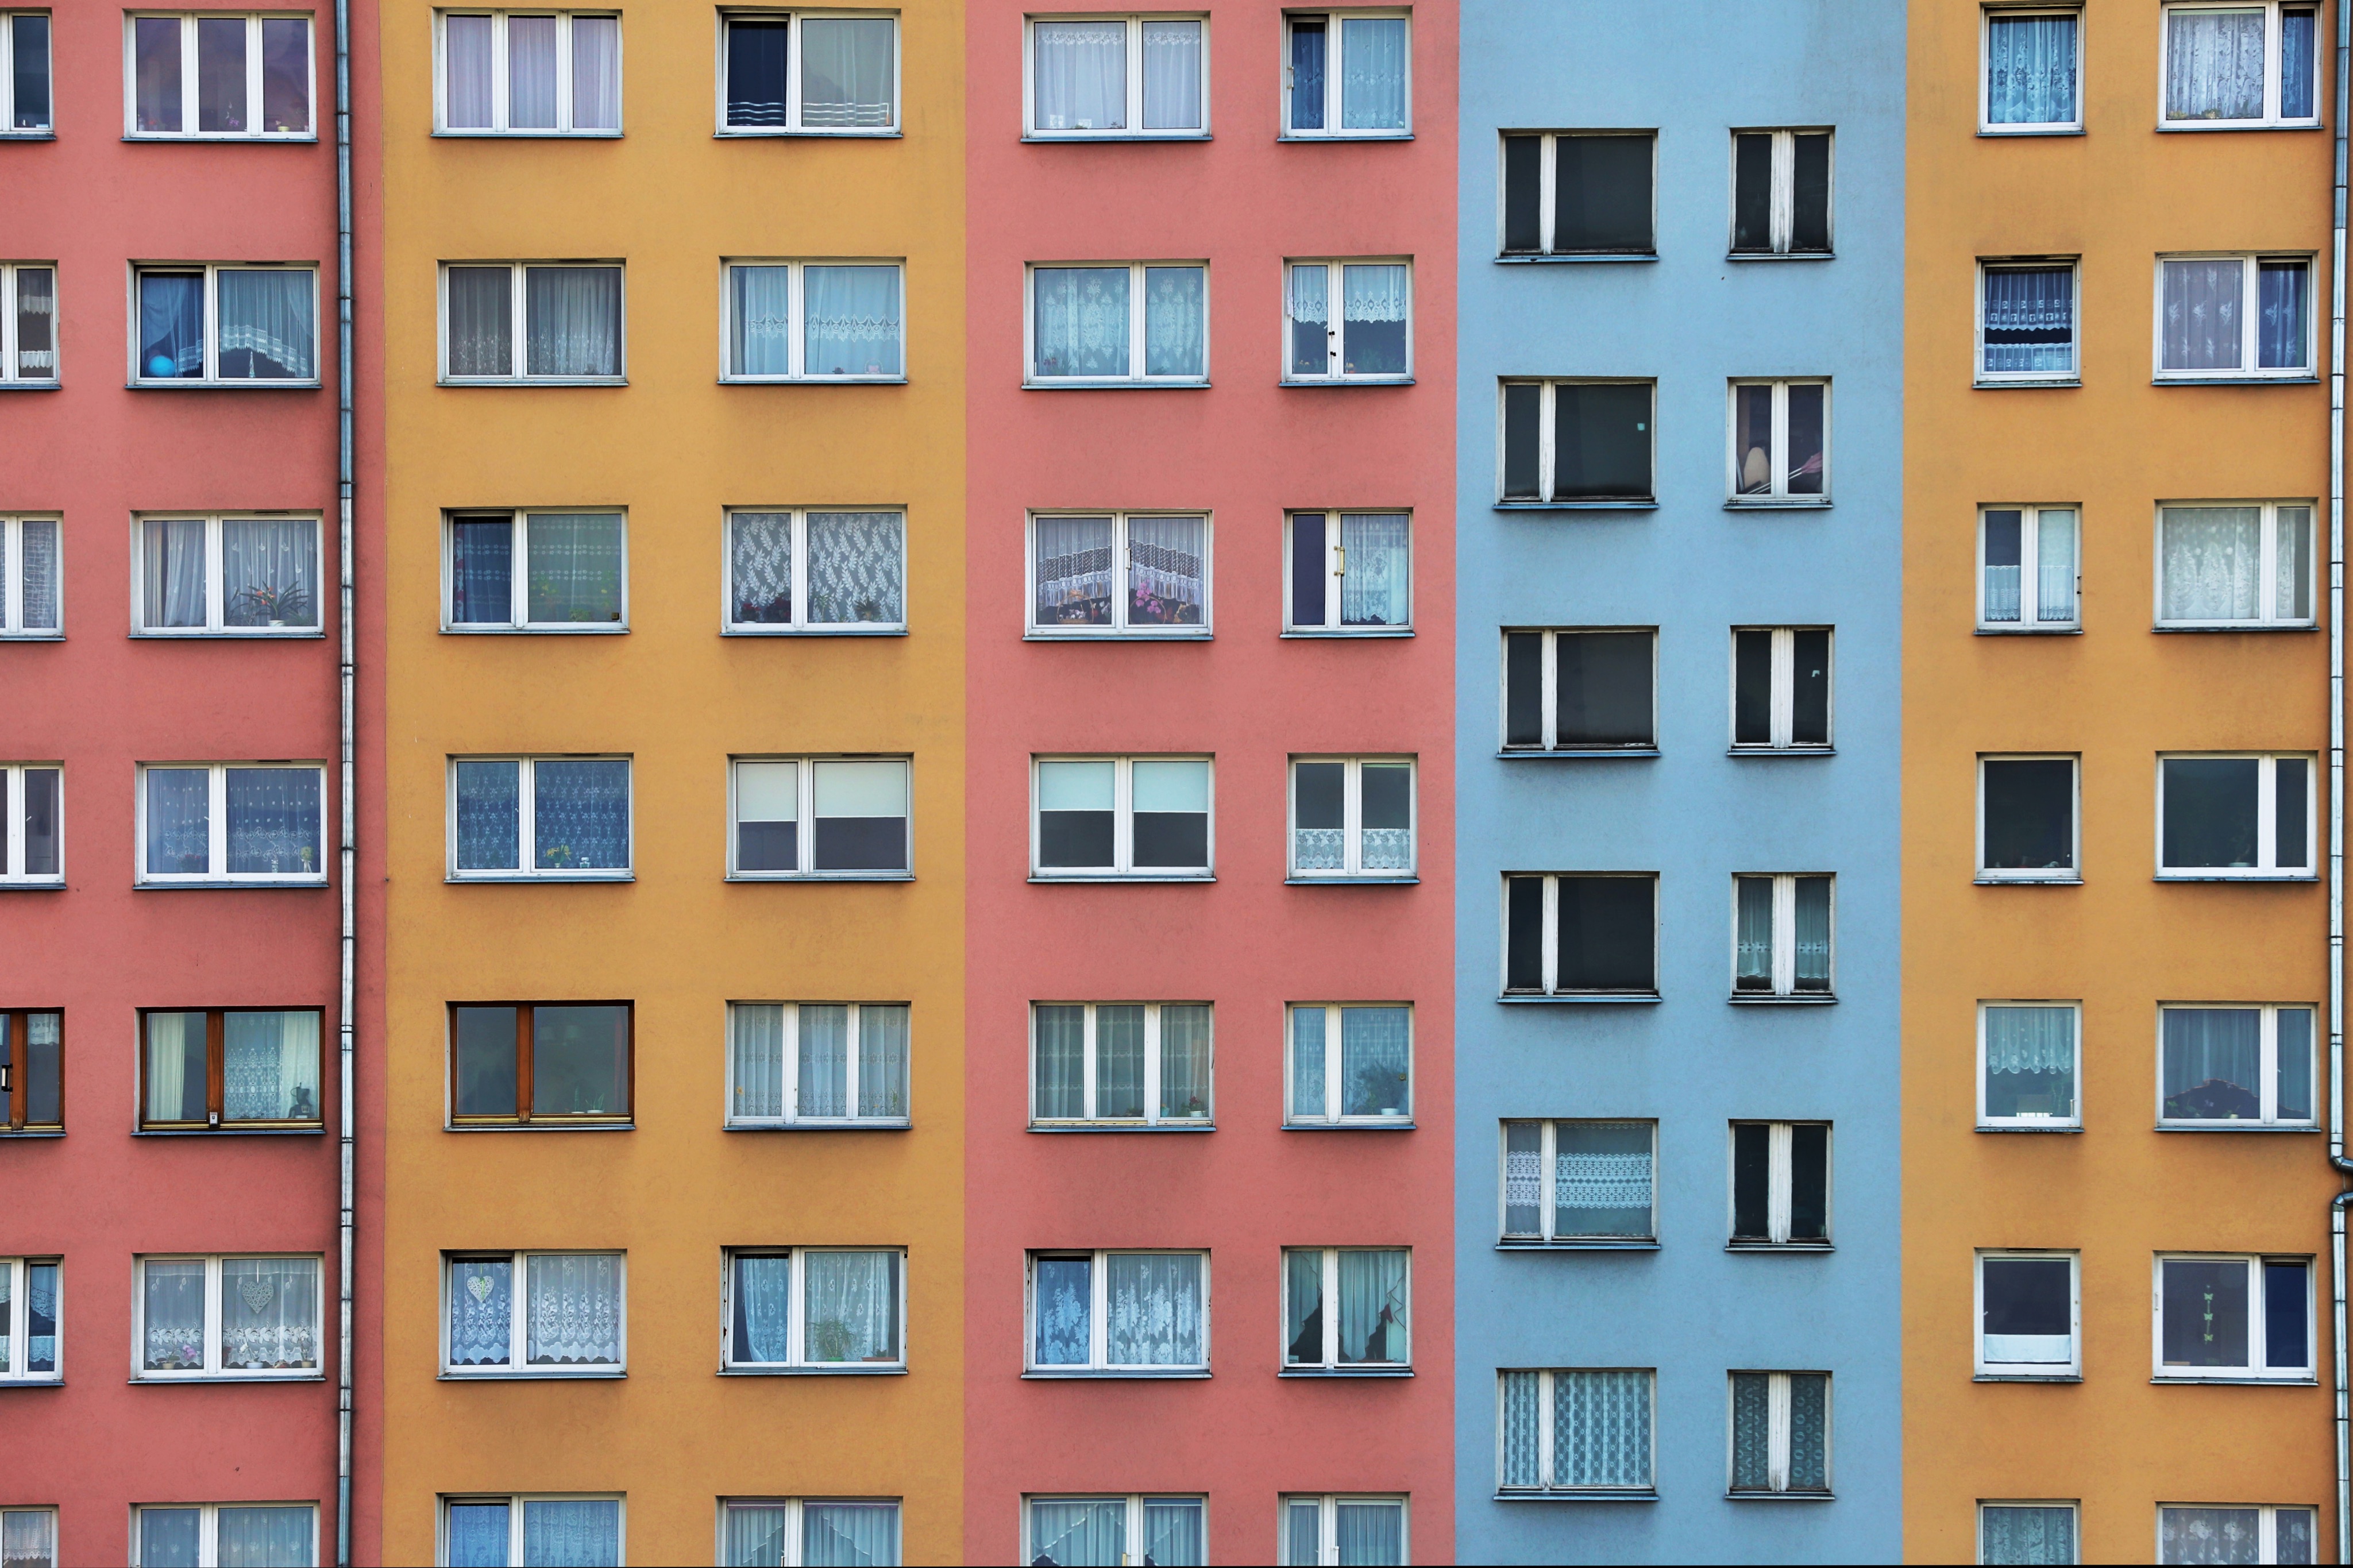 Mehrfarbige Fassade eines Wohnhauses mit zahlreichen Fenstern.